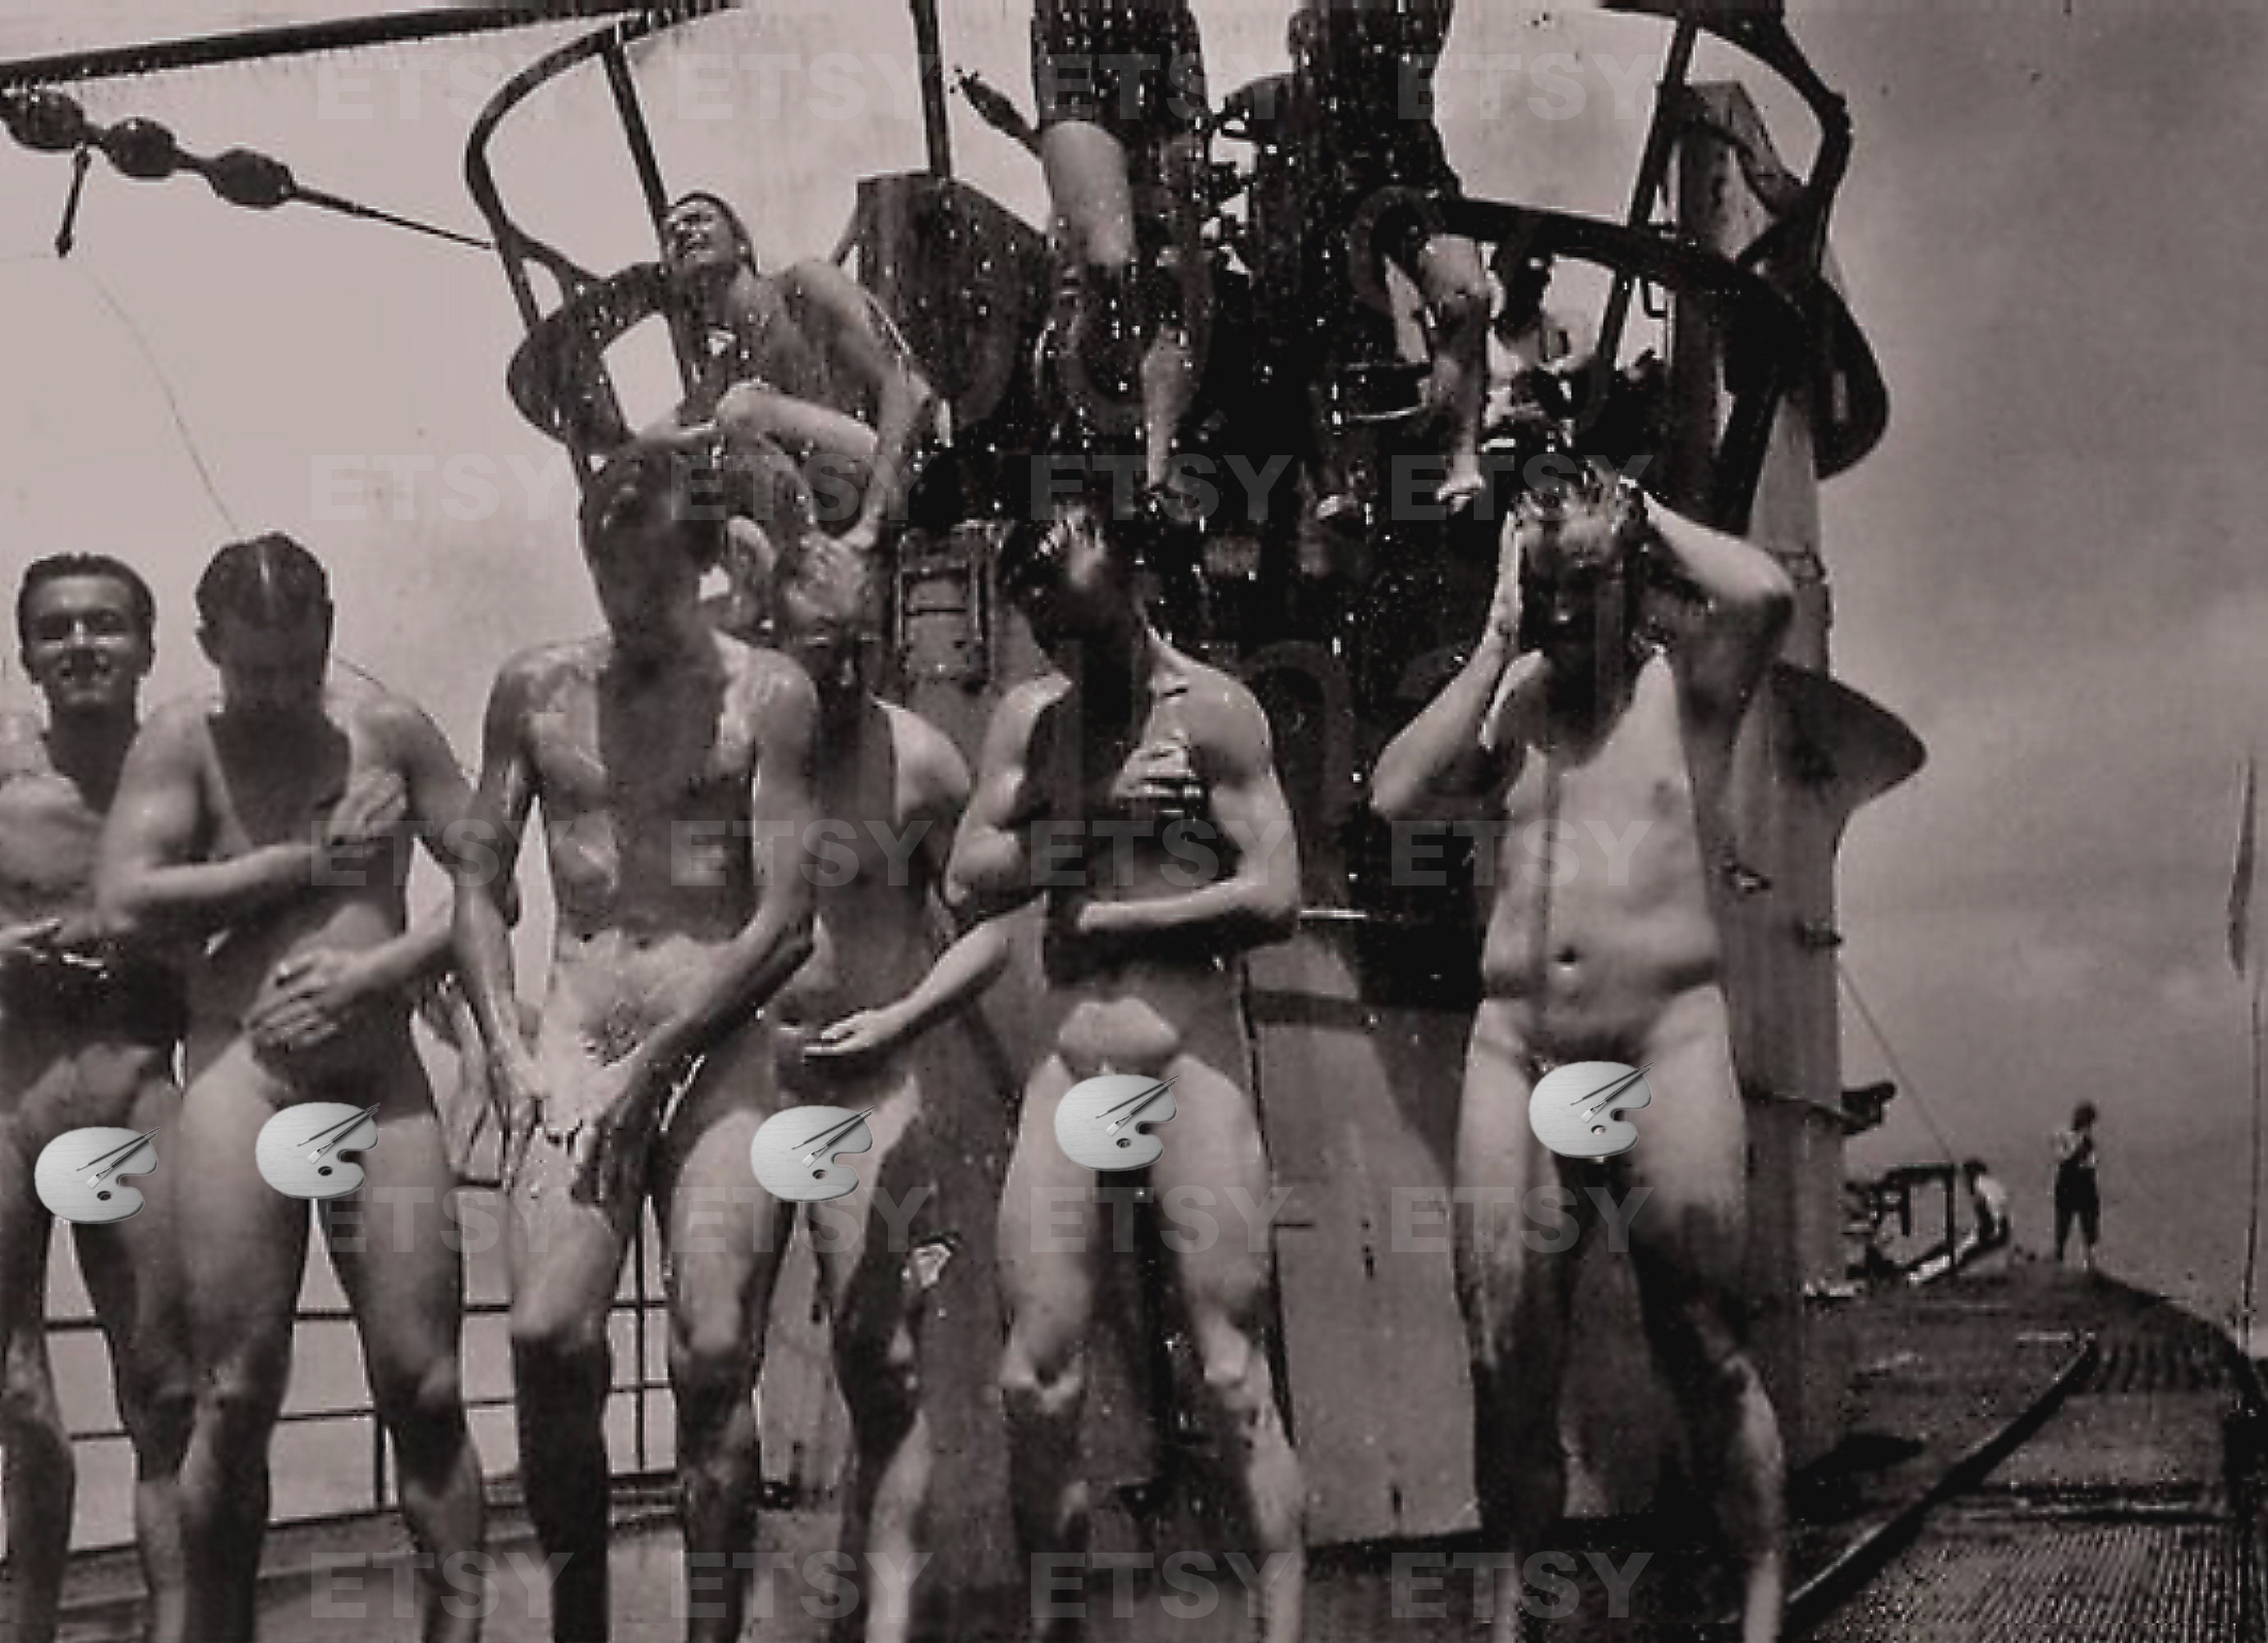 Vintage nude military